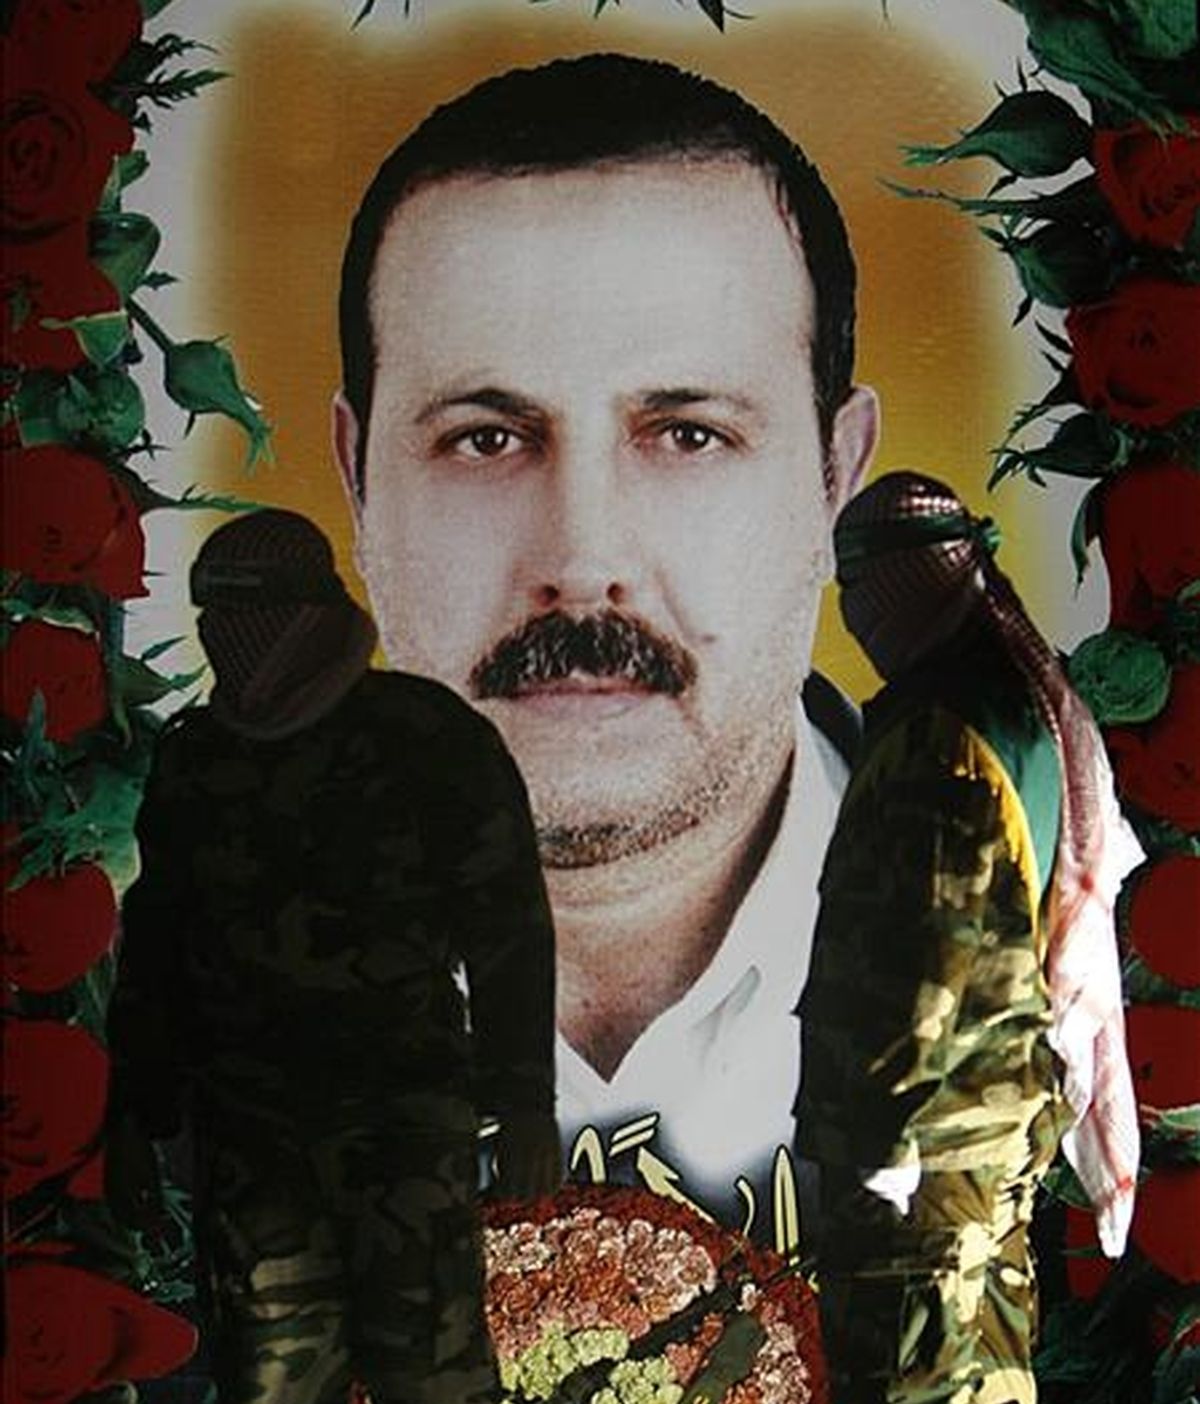 Un grupo de militantes del grupo Hamás posa junto a una fotografía del asesinado comandante militar de Hamas, Mahmoud al-Mabhouh. EFE/Archivo